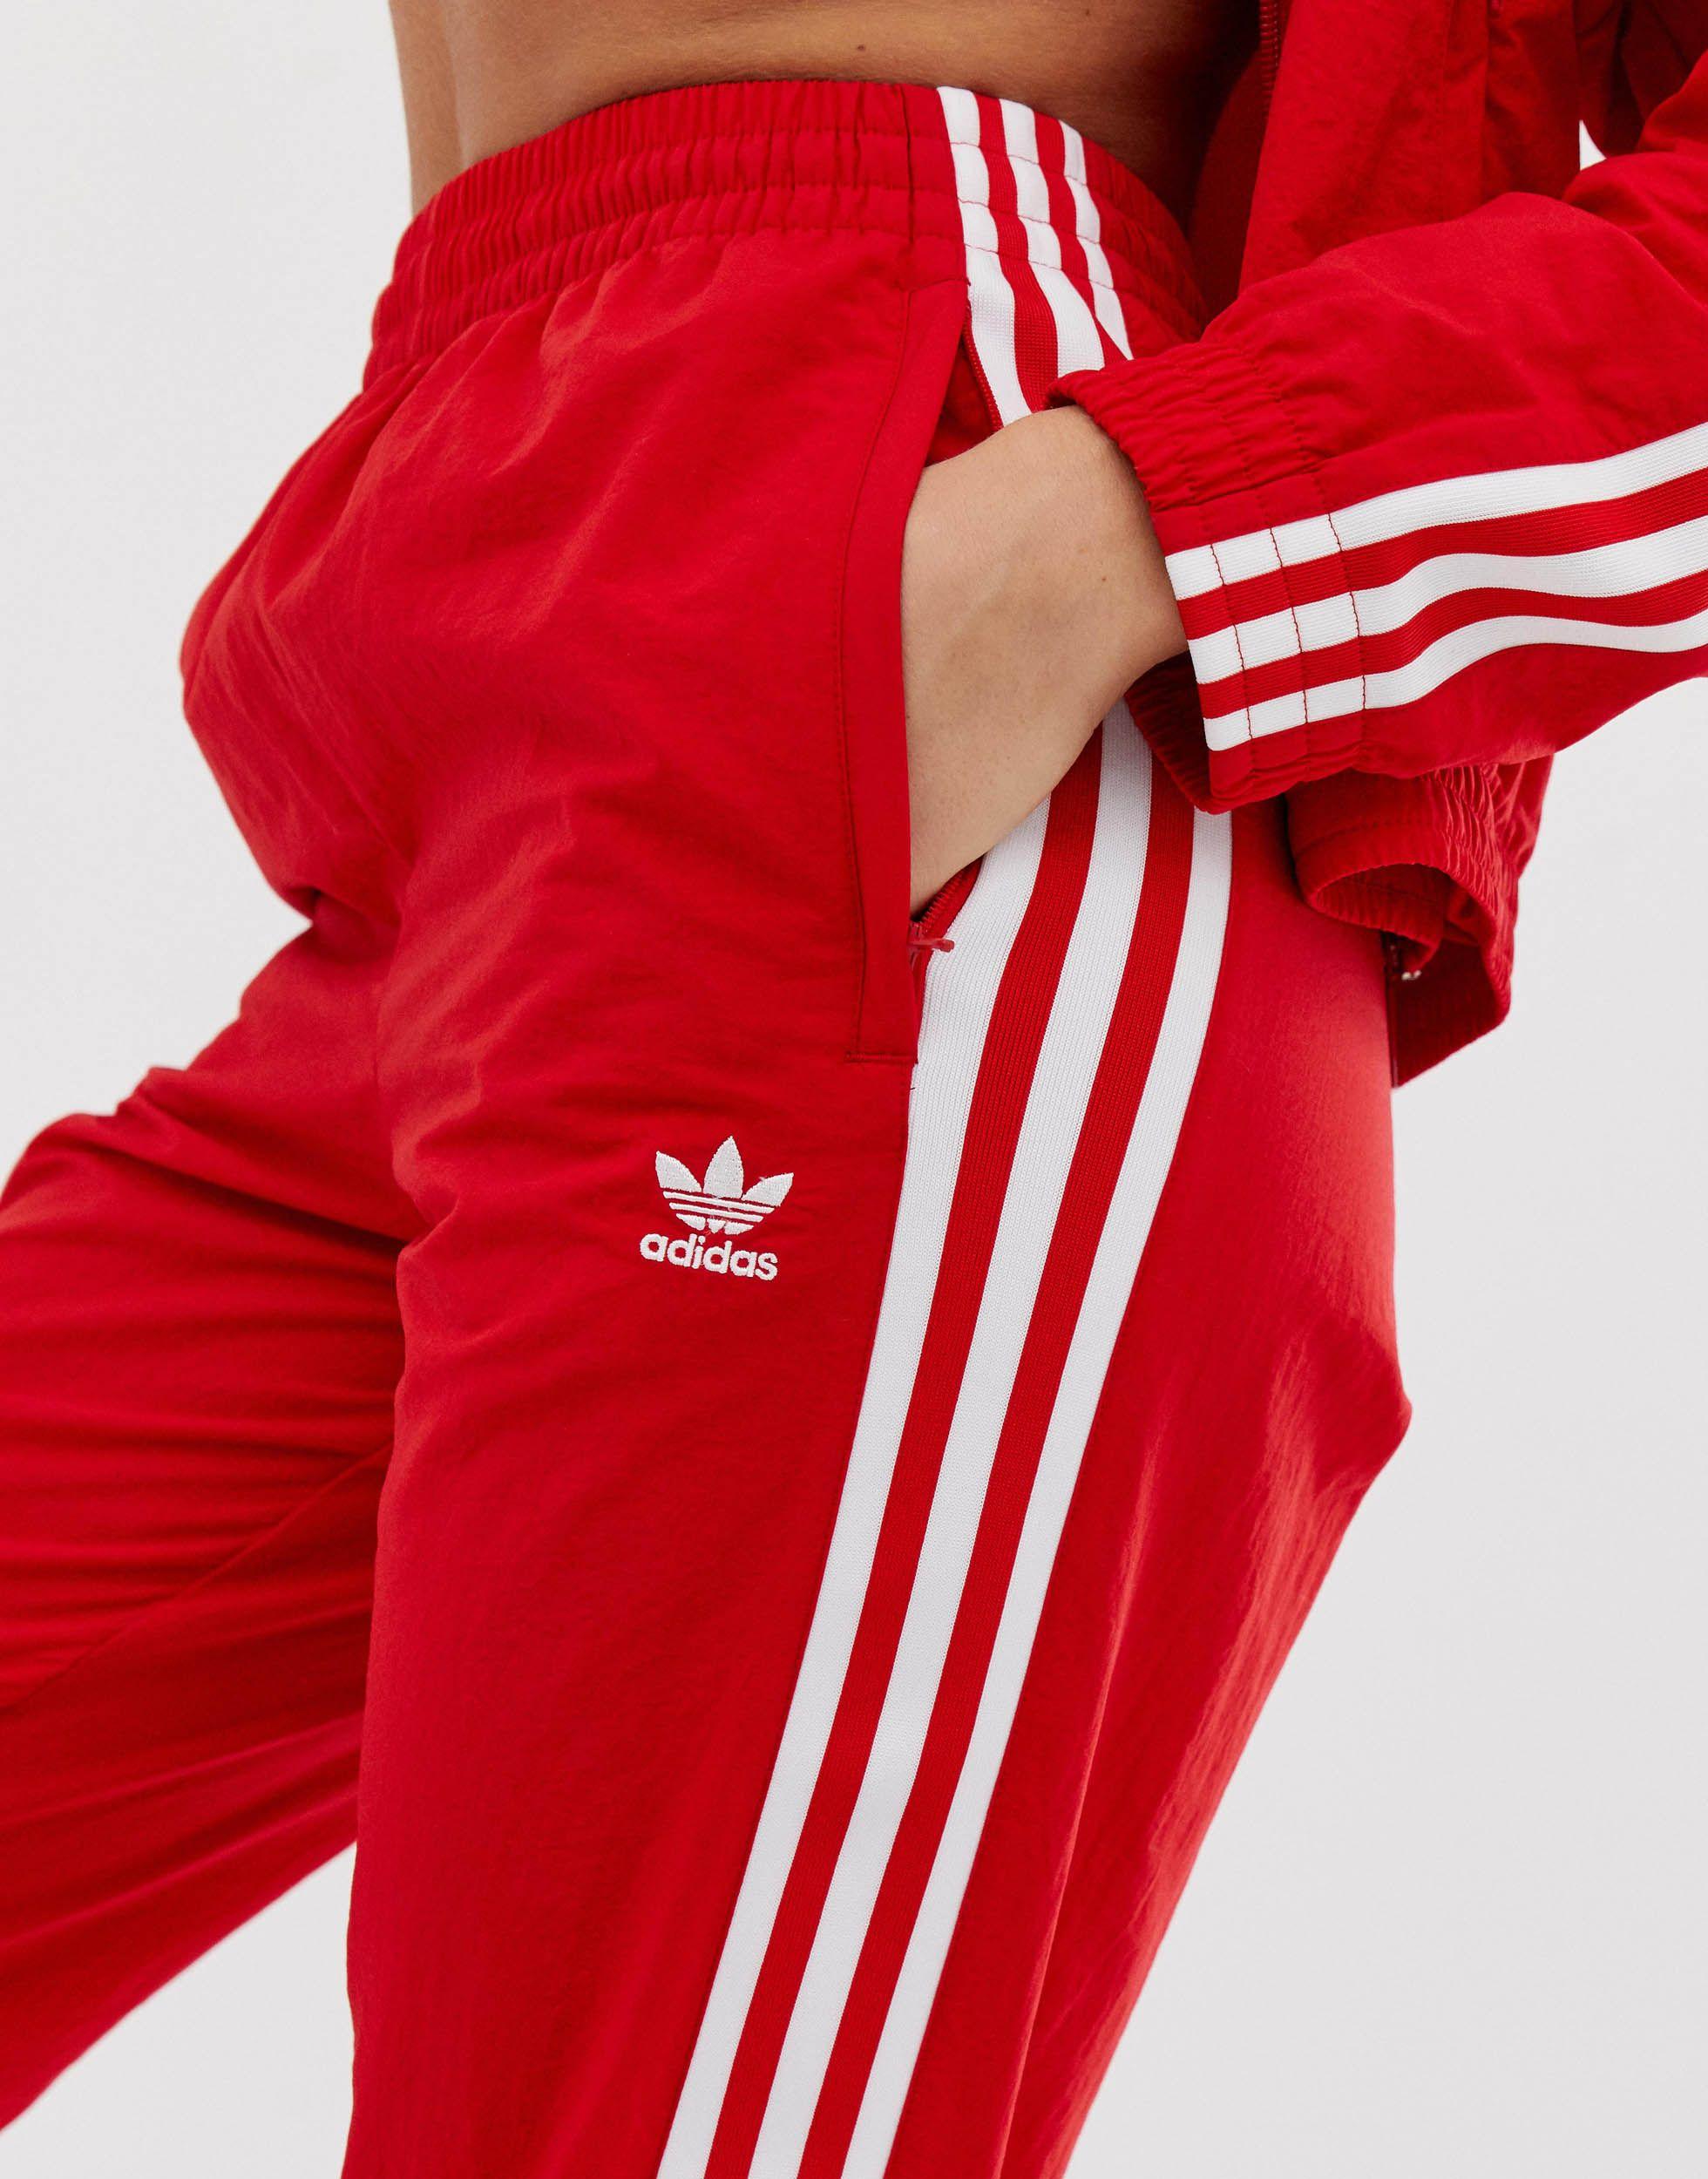 rencontre Évaporer Précipice pantalon de survetement rouge adidas femme  étiquette cartouche minéral